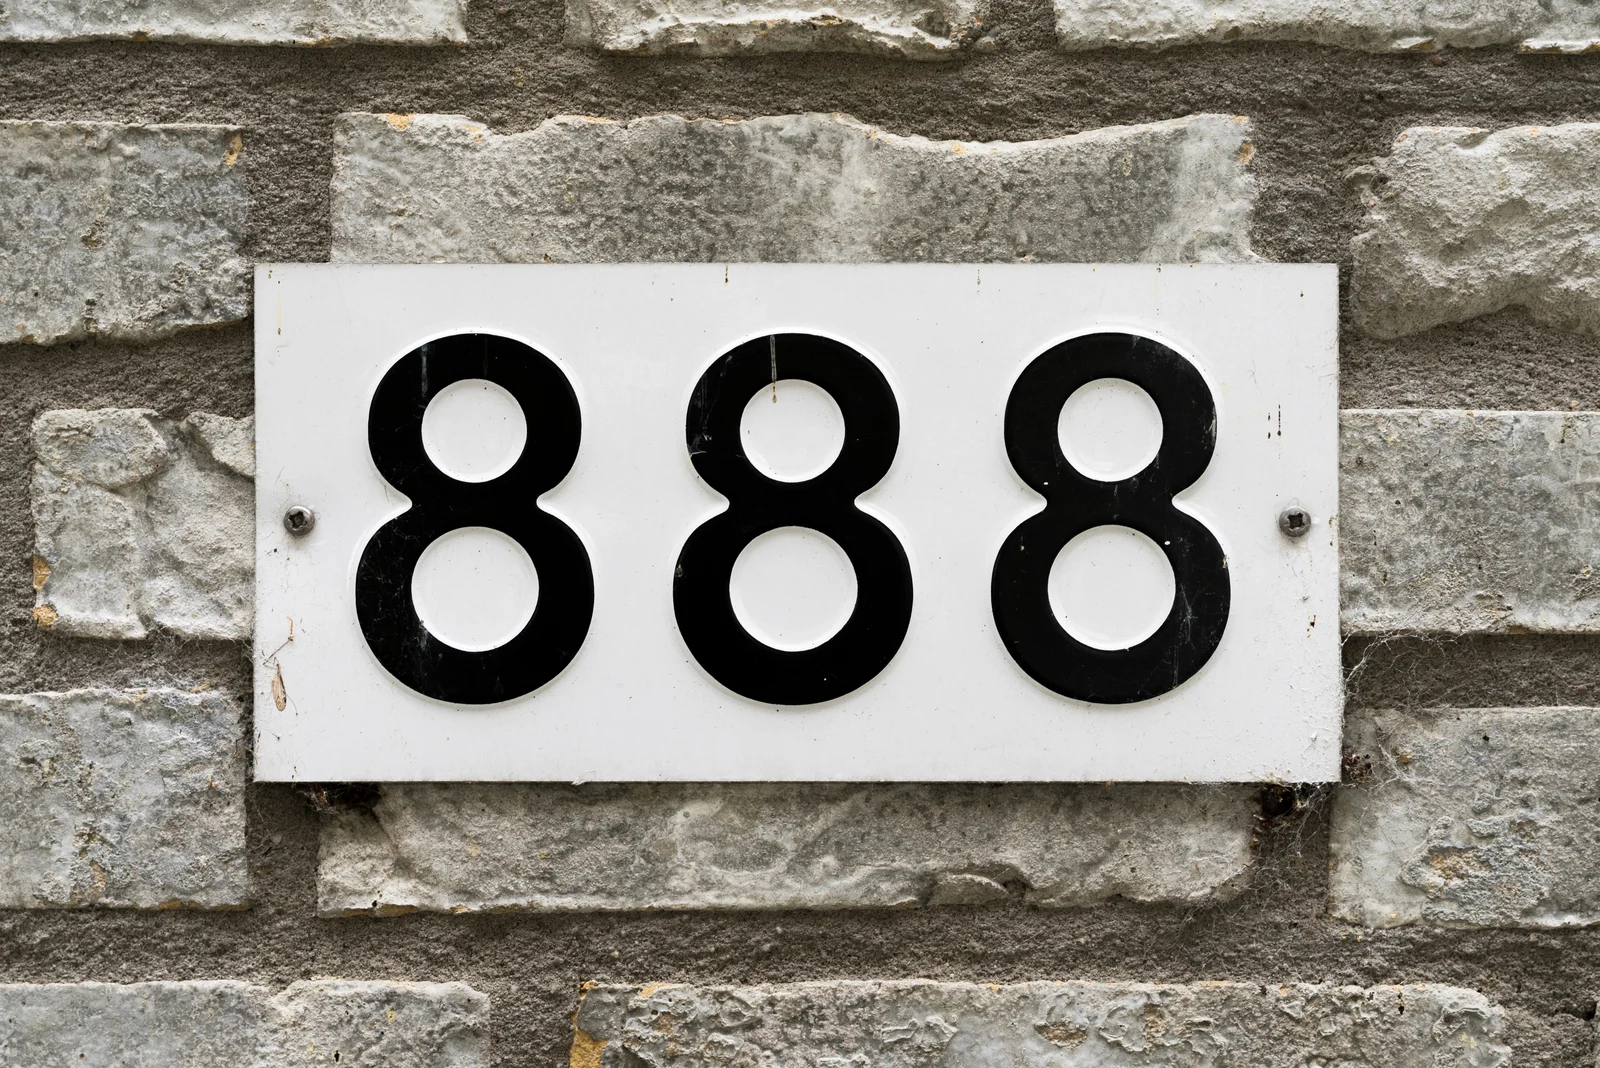 Nummer 888 auf den Ziegeln des Hauses